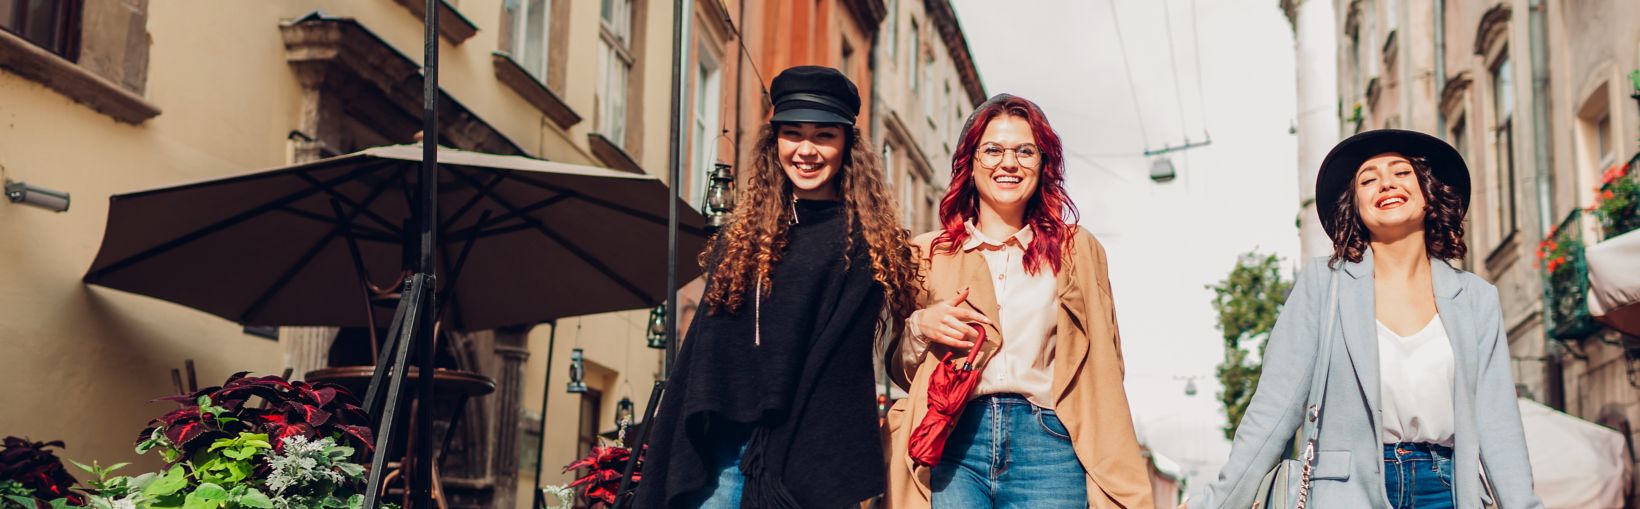 Photo extérieure de trois jeunes femmes marchant dans la rue de la ville.